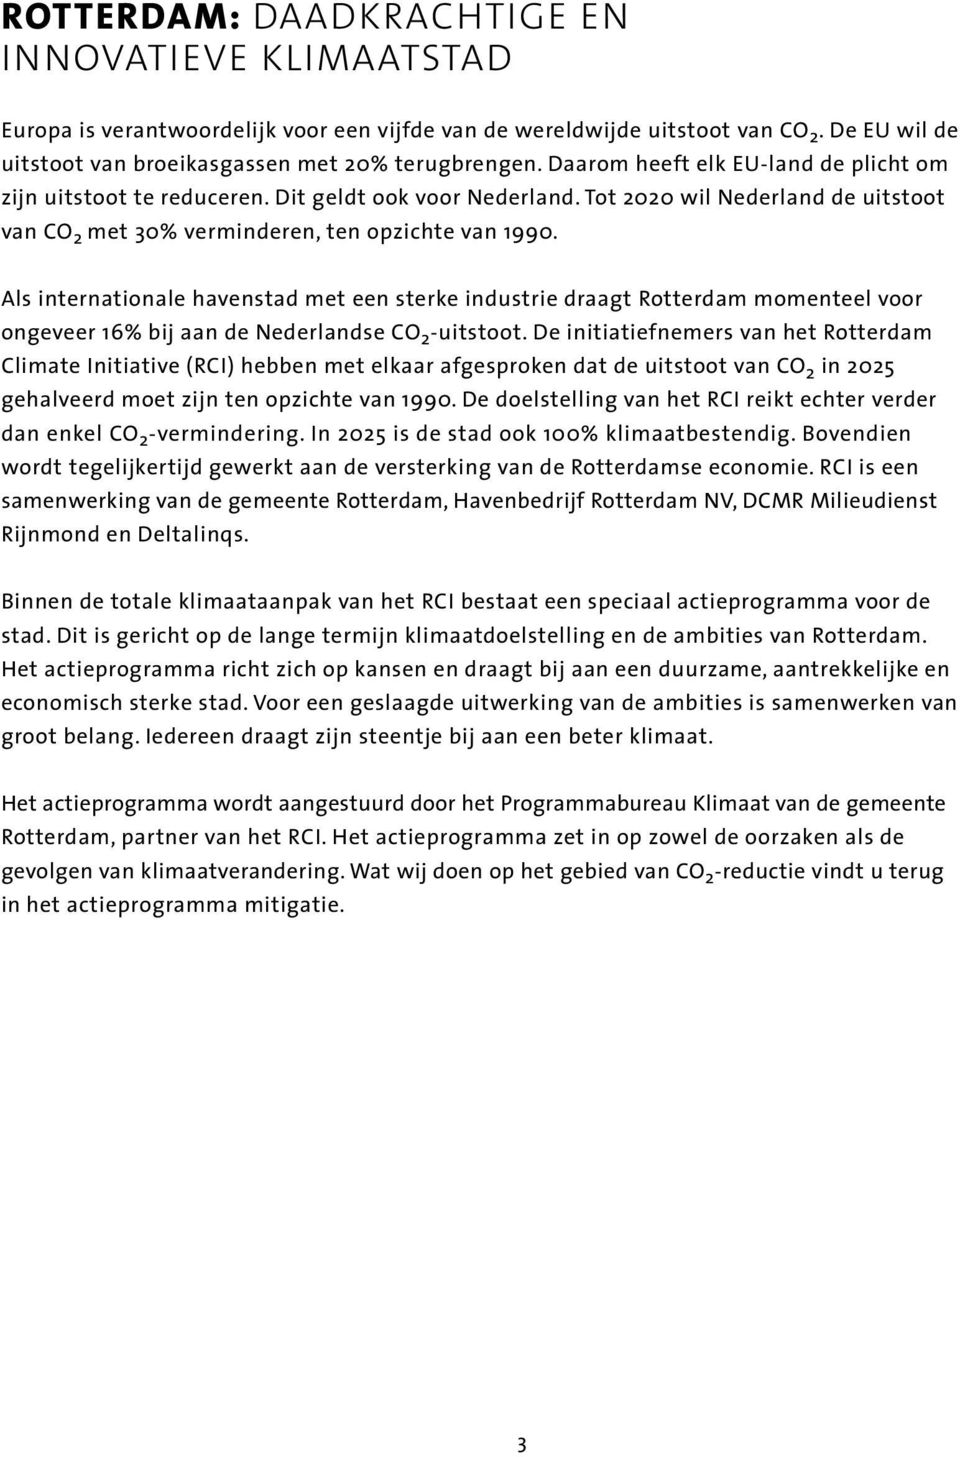 Als internationale havenstad met een sterke industrie draagt Rotterdam momenteel voor ongeveer 16% bij aan de Nederlandse CO 2 -uitstoot.